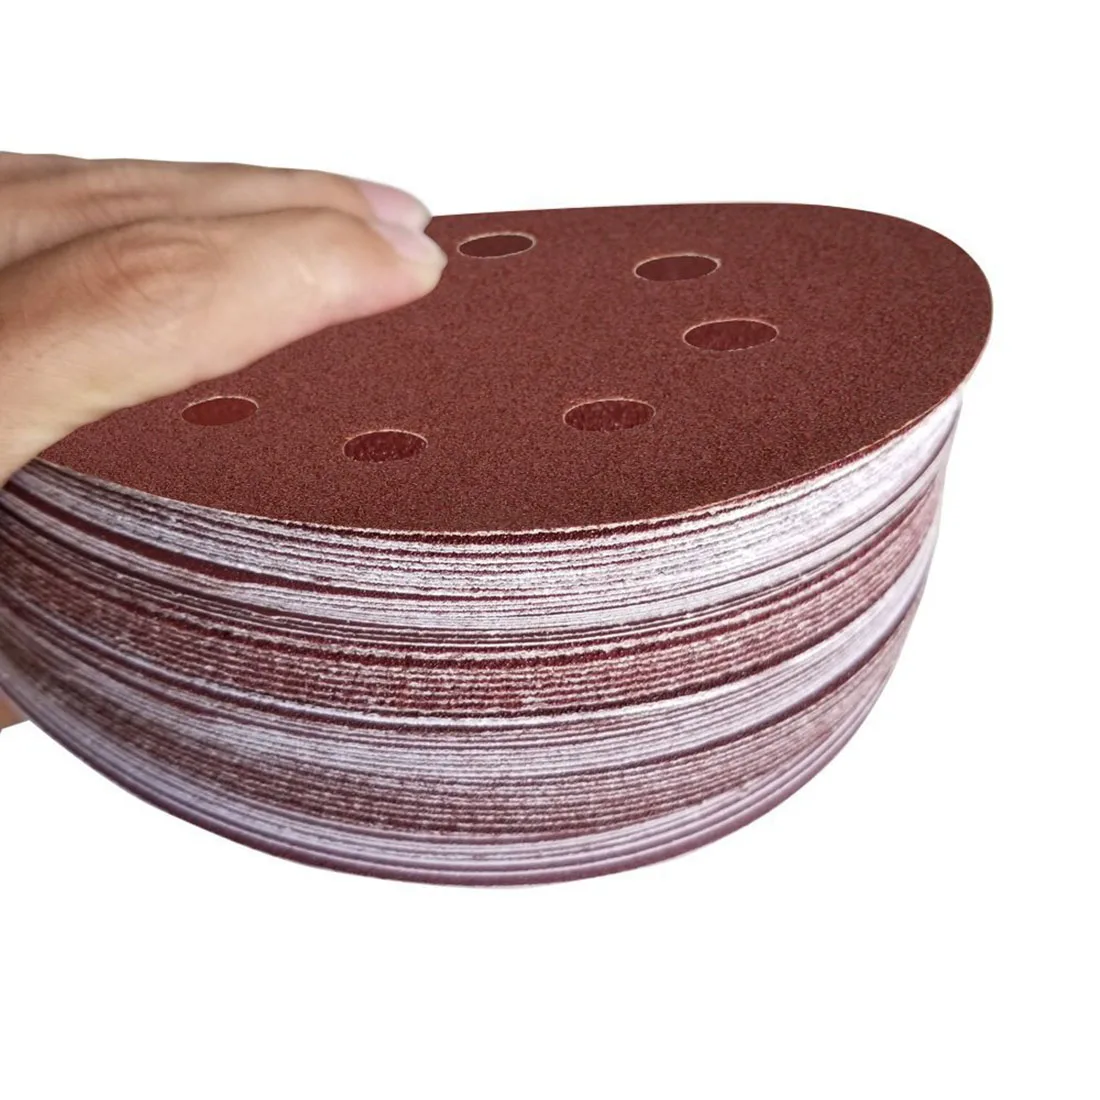 Шлифовальные диски 70 шт. 8 отверстий 5 дюймов наждачная бумага круговой пылеотталкивающего покрытия крюк и петля 60/80/120/180/240/320/400 Грит